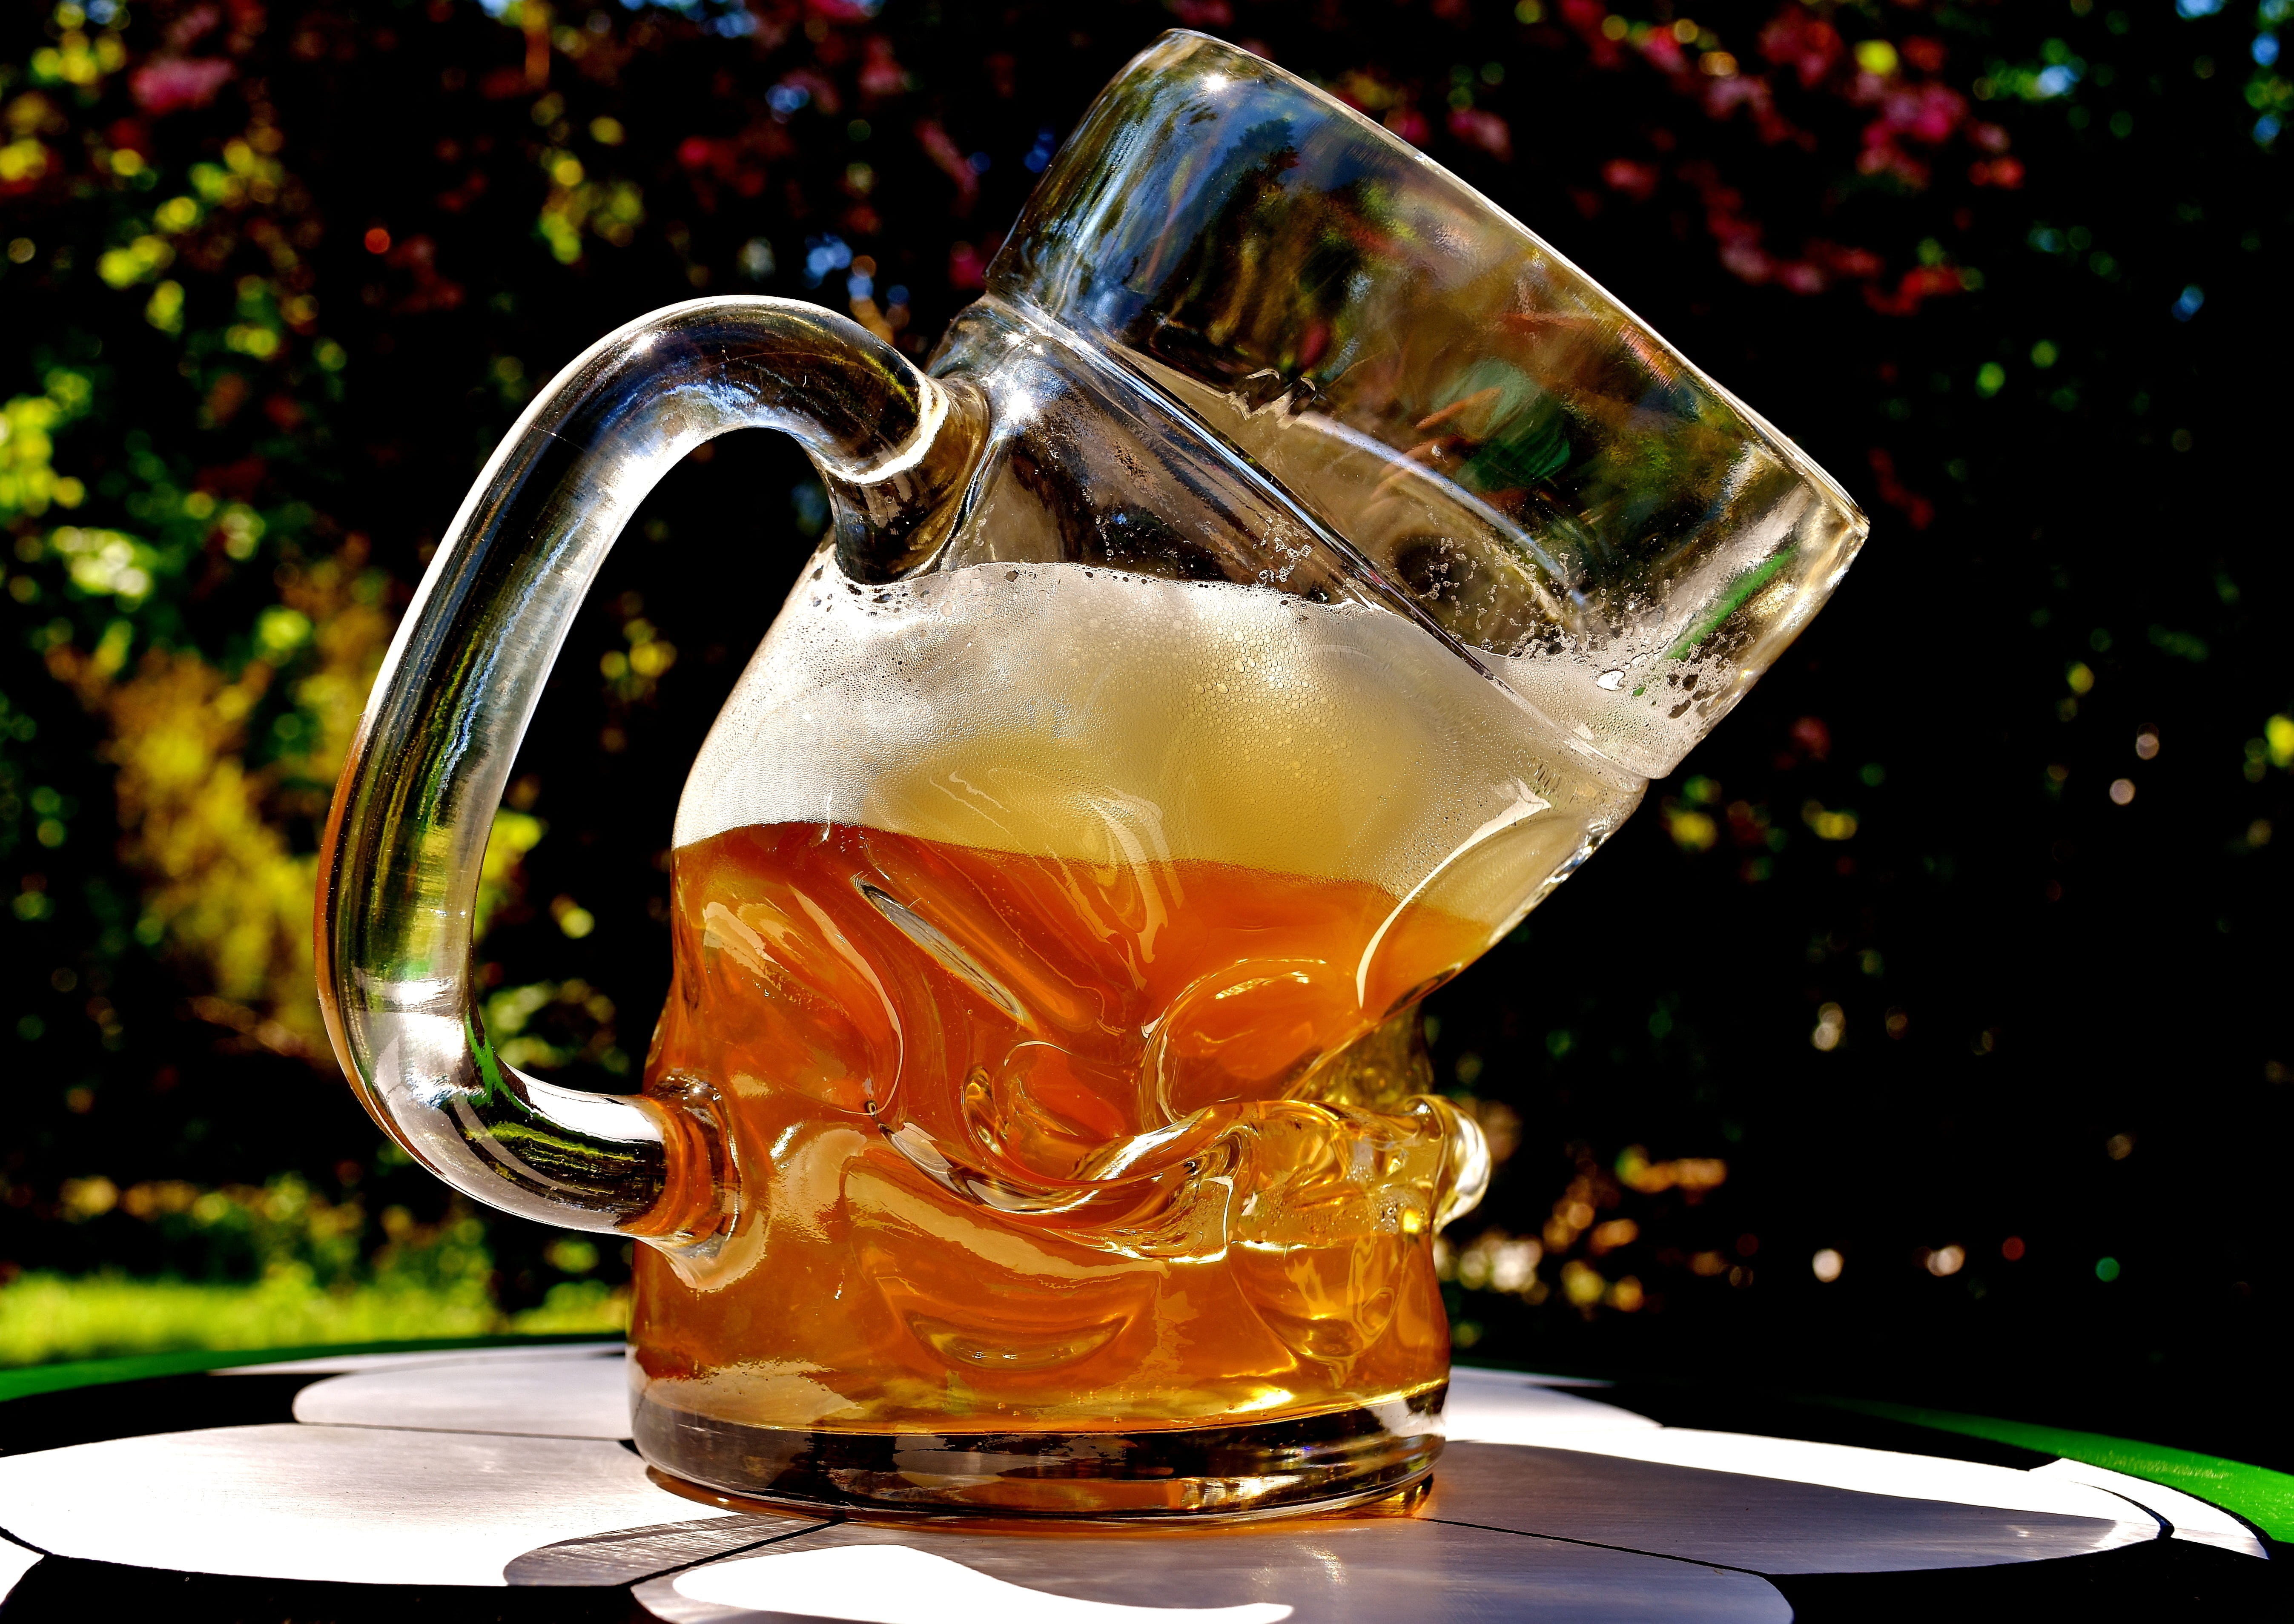 clear glass beer mug filled with beer, beer glass, deformed, bent